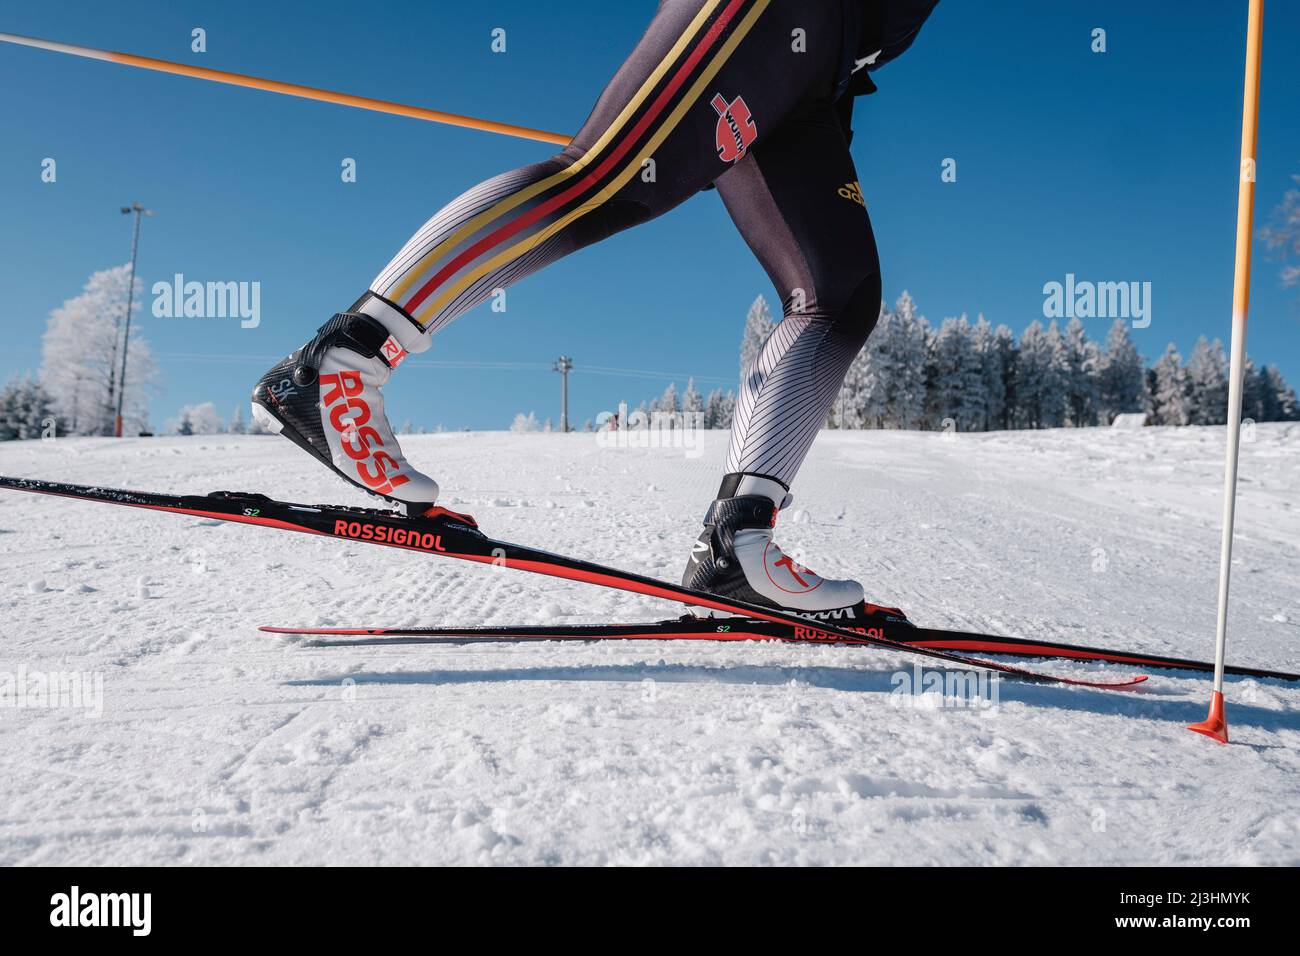 Sci di fondo, primo piano di atleta con sci, scarponi e racchette, neve collina sullo sfondo Foto Stock